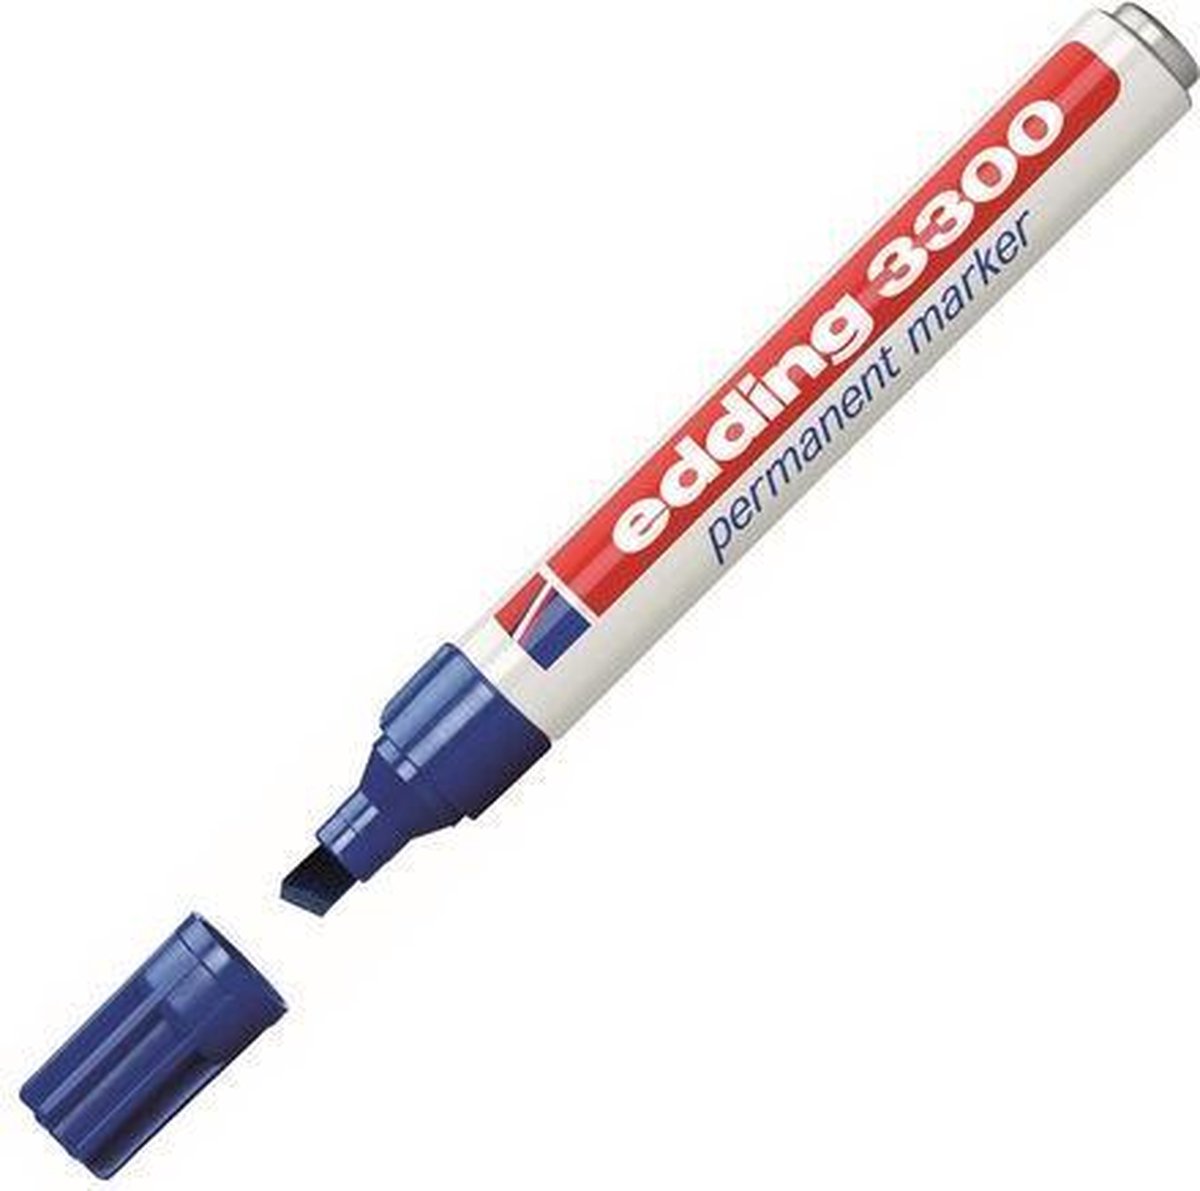 Viltstift edding 3300 schuin blauw 1-5mm - 10 stuks - 10 stuks